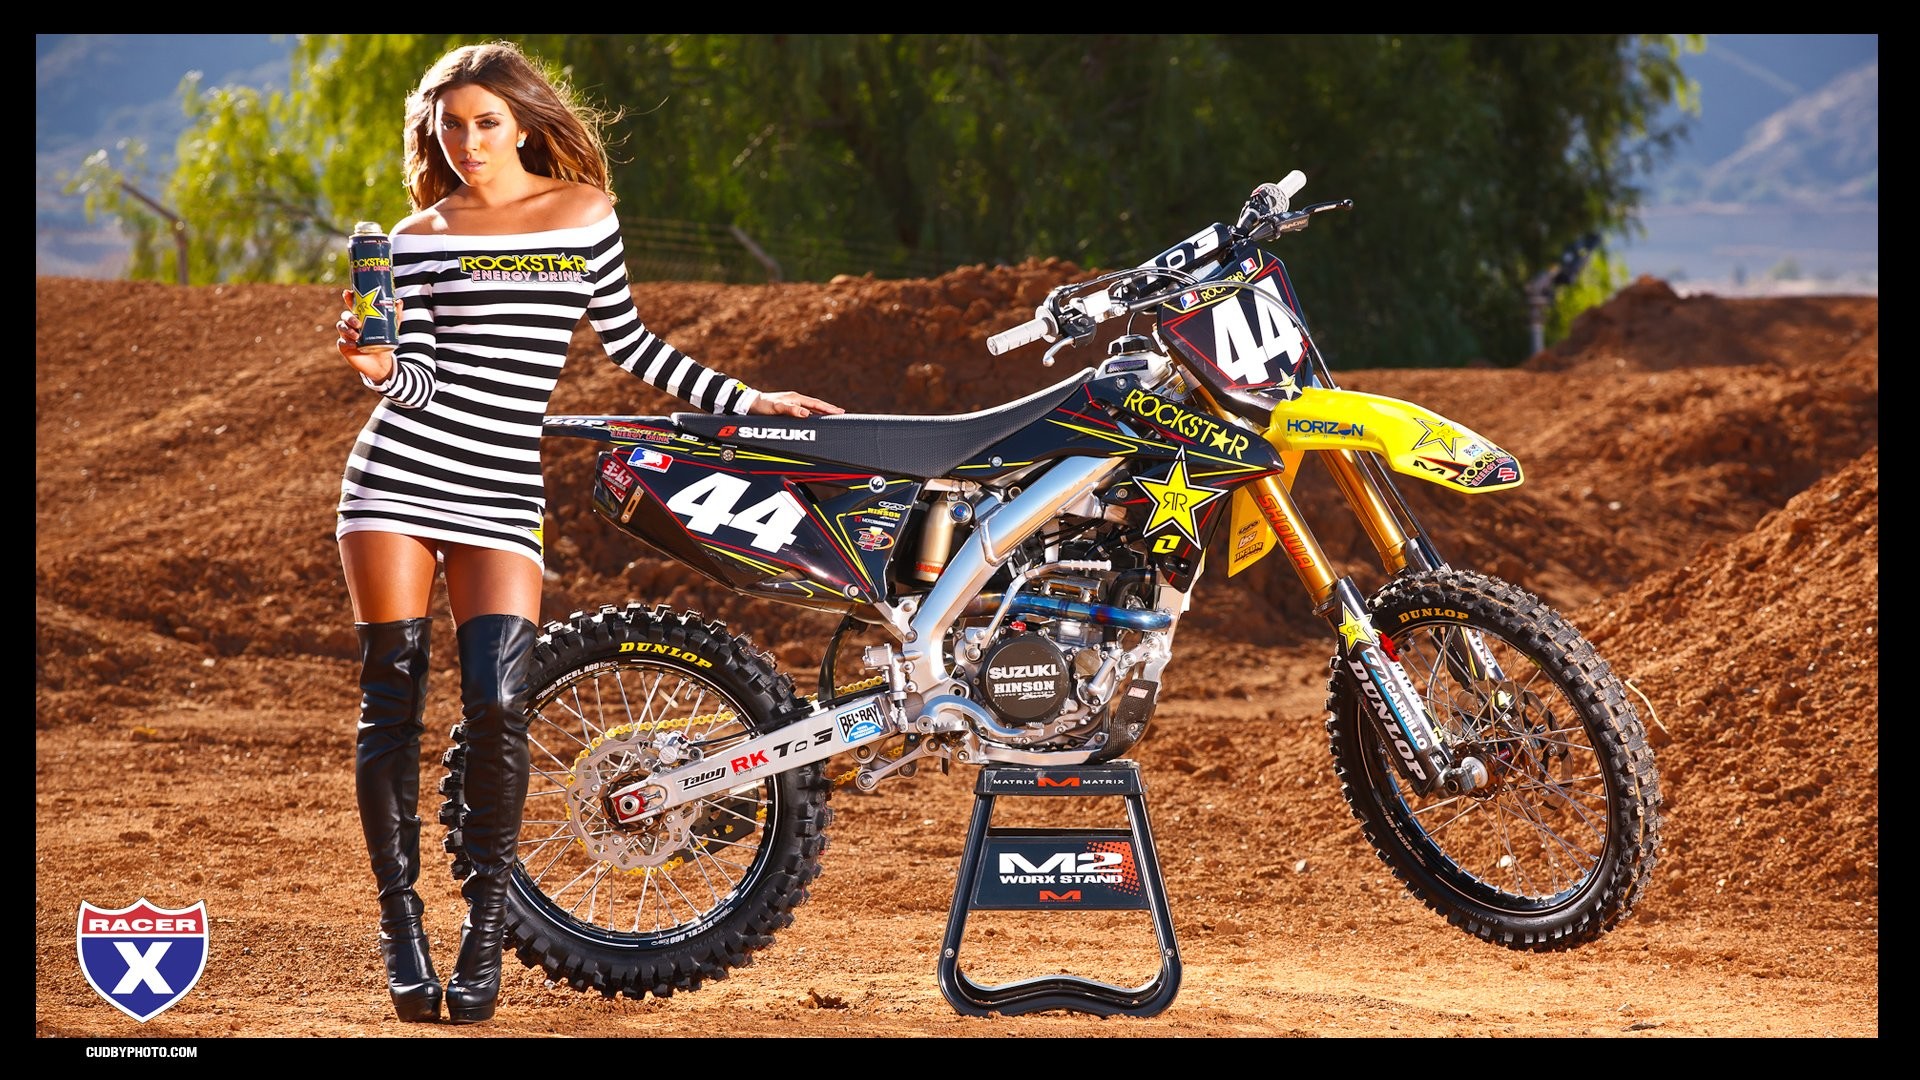 Twitter | Motocross girls, Dirt bike girl, Motorcycle girl